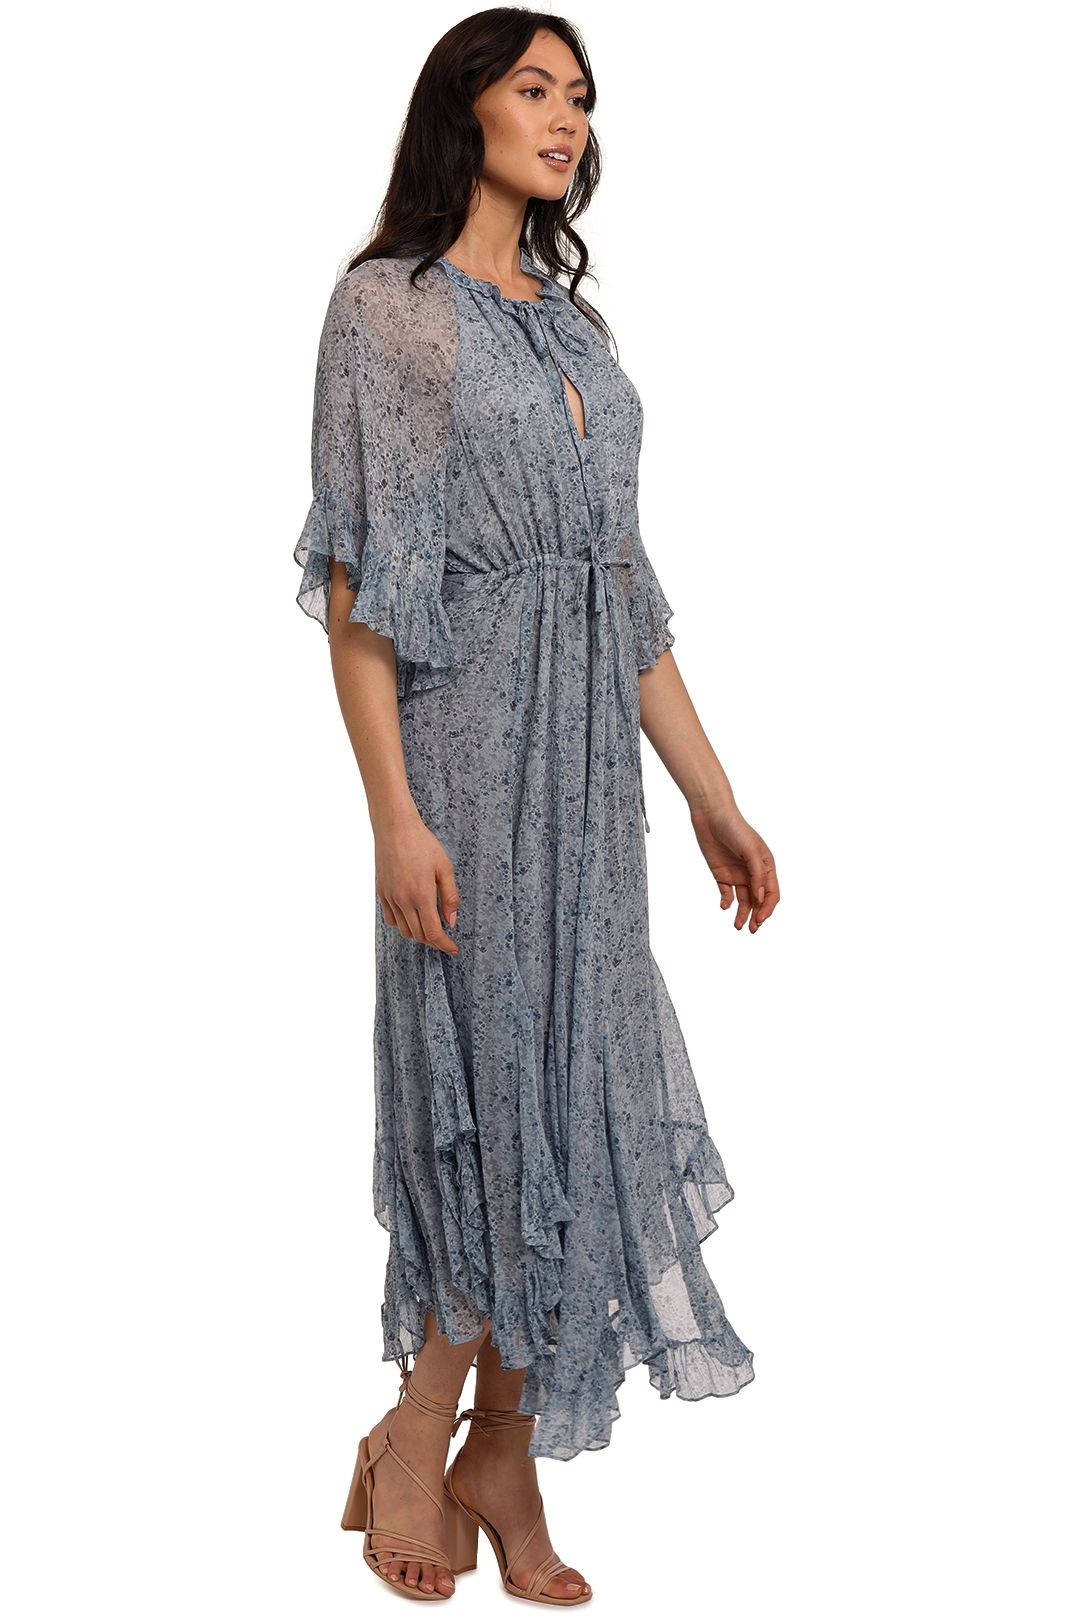 Shona Joy Harmony Flutter Sleeve Midi Dress Ruffle